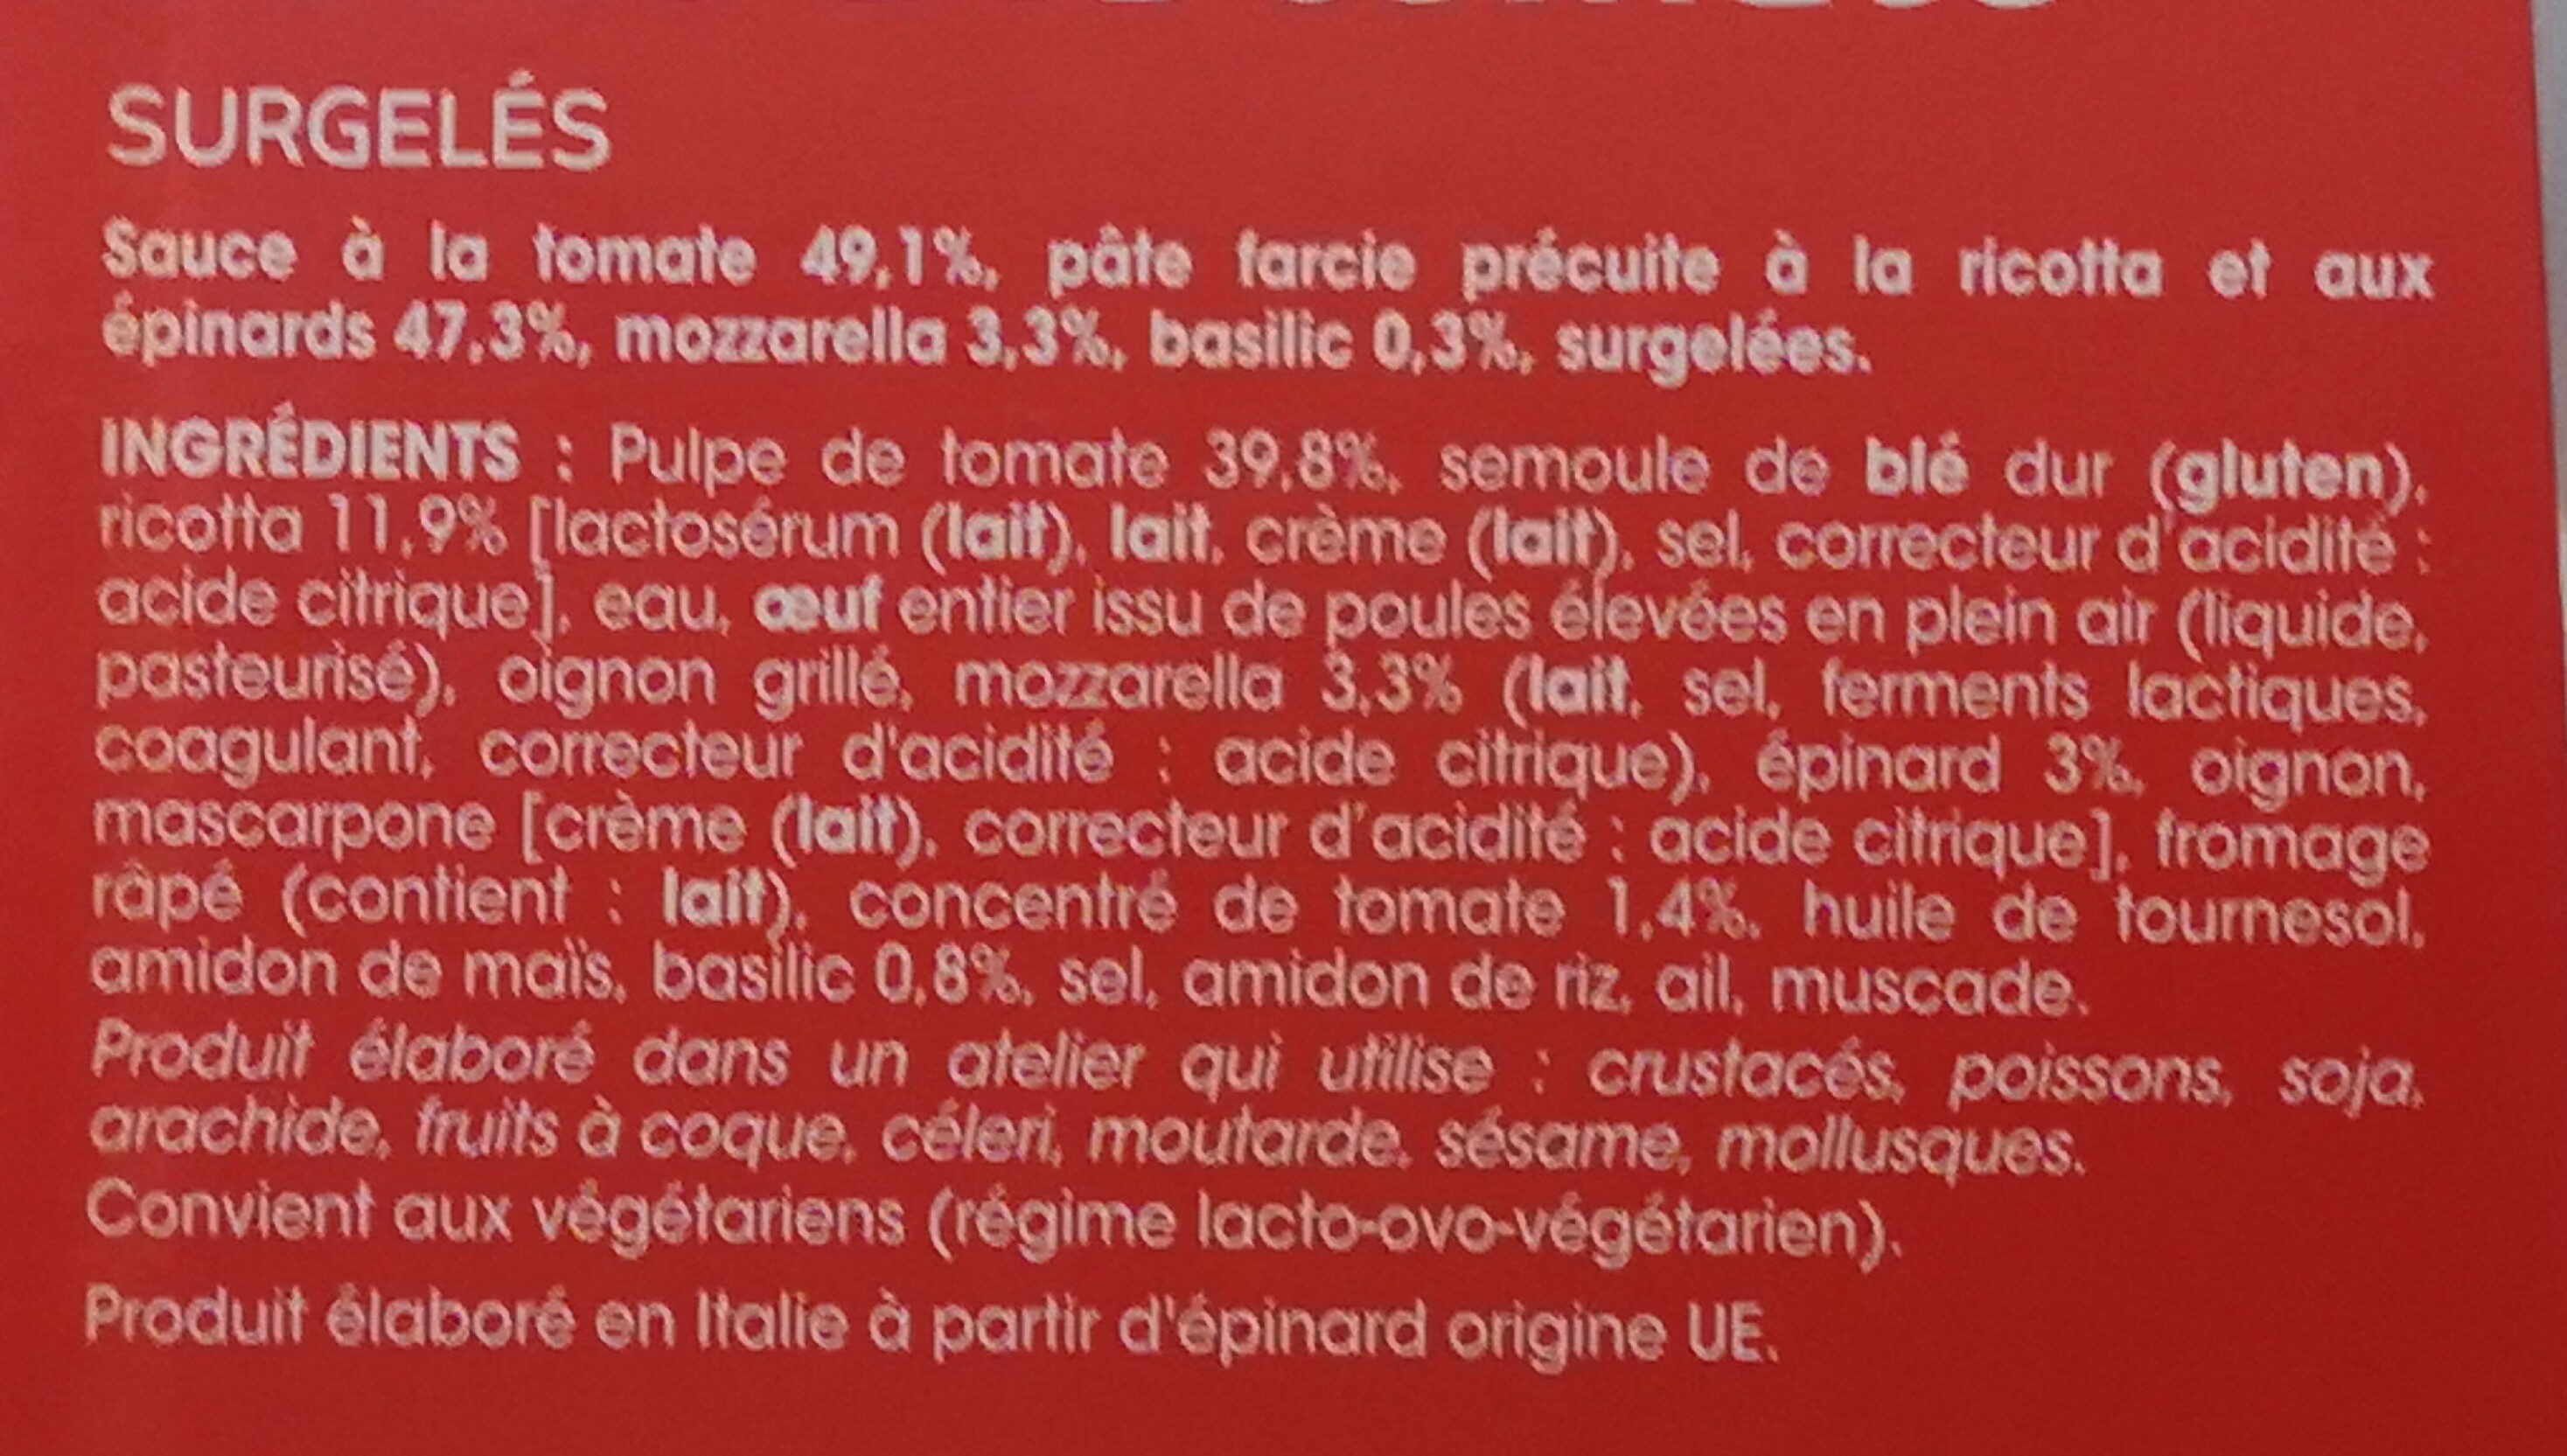 Ravioli ricotta épinard, sauce tomate - Ingredienti - fr